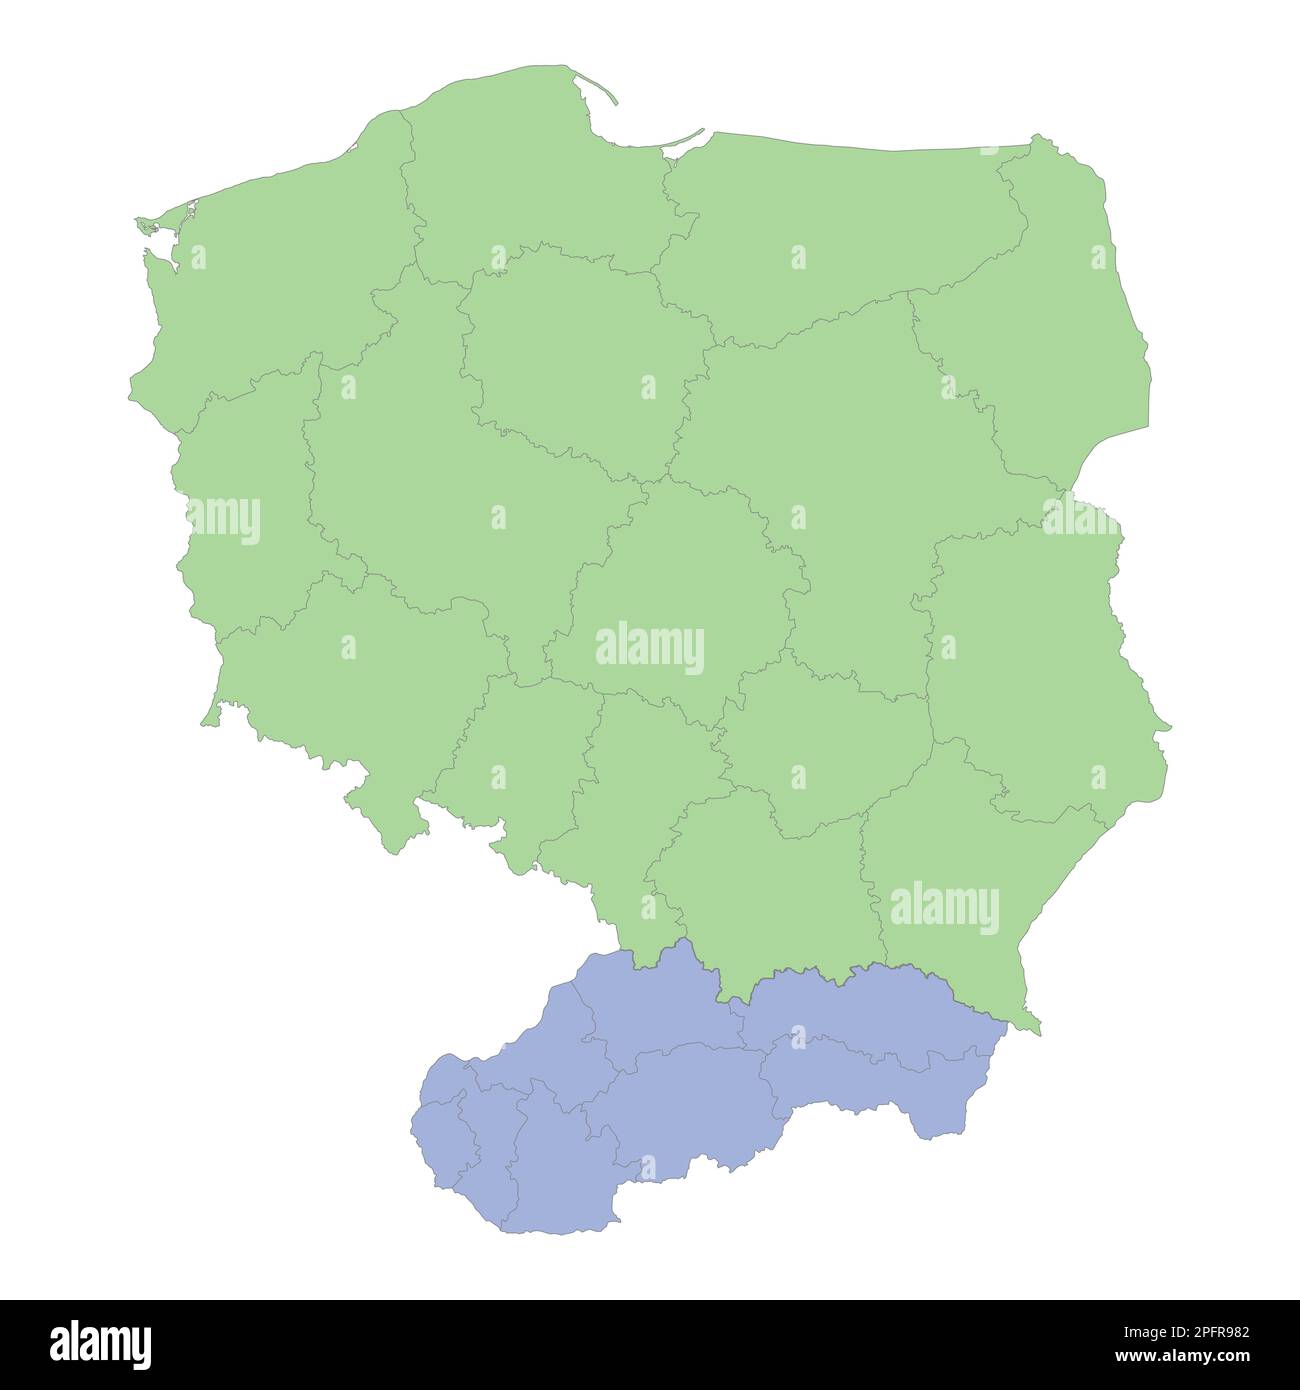 Mappa politica di alta qualità della Polonia e della Slovacchia con i confini delle regioni o delle province. Illustrazione vettoriale Illustrazione Vettoriale